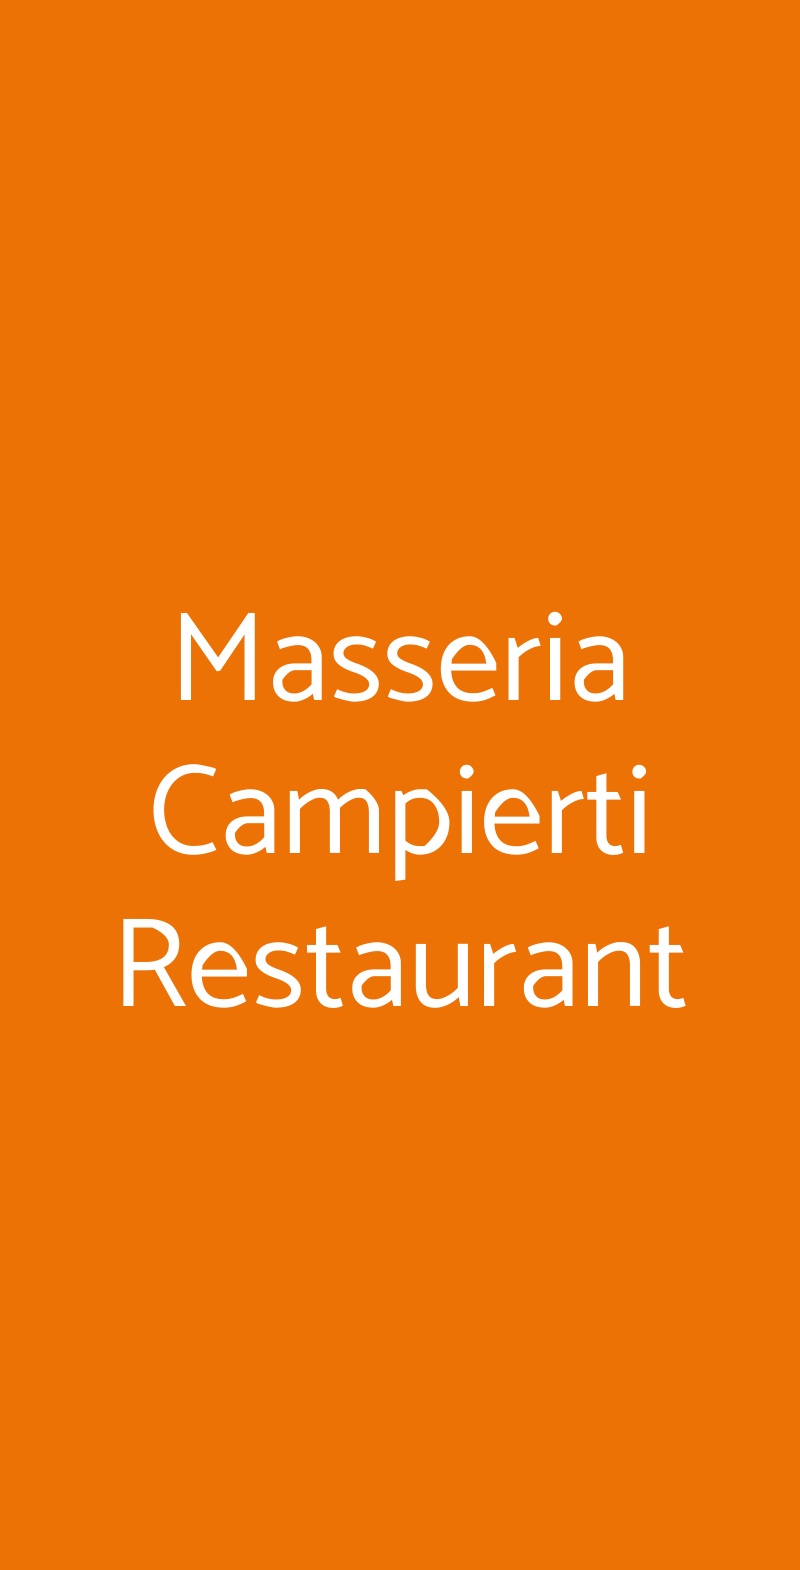 Masseria Campierti Restaurant Falciano del Massico menù 1 pagina